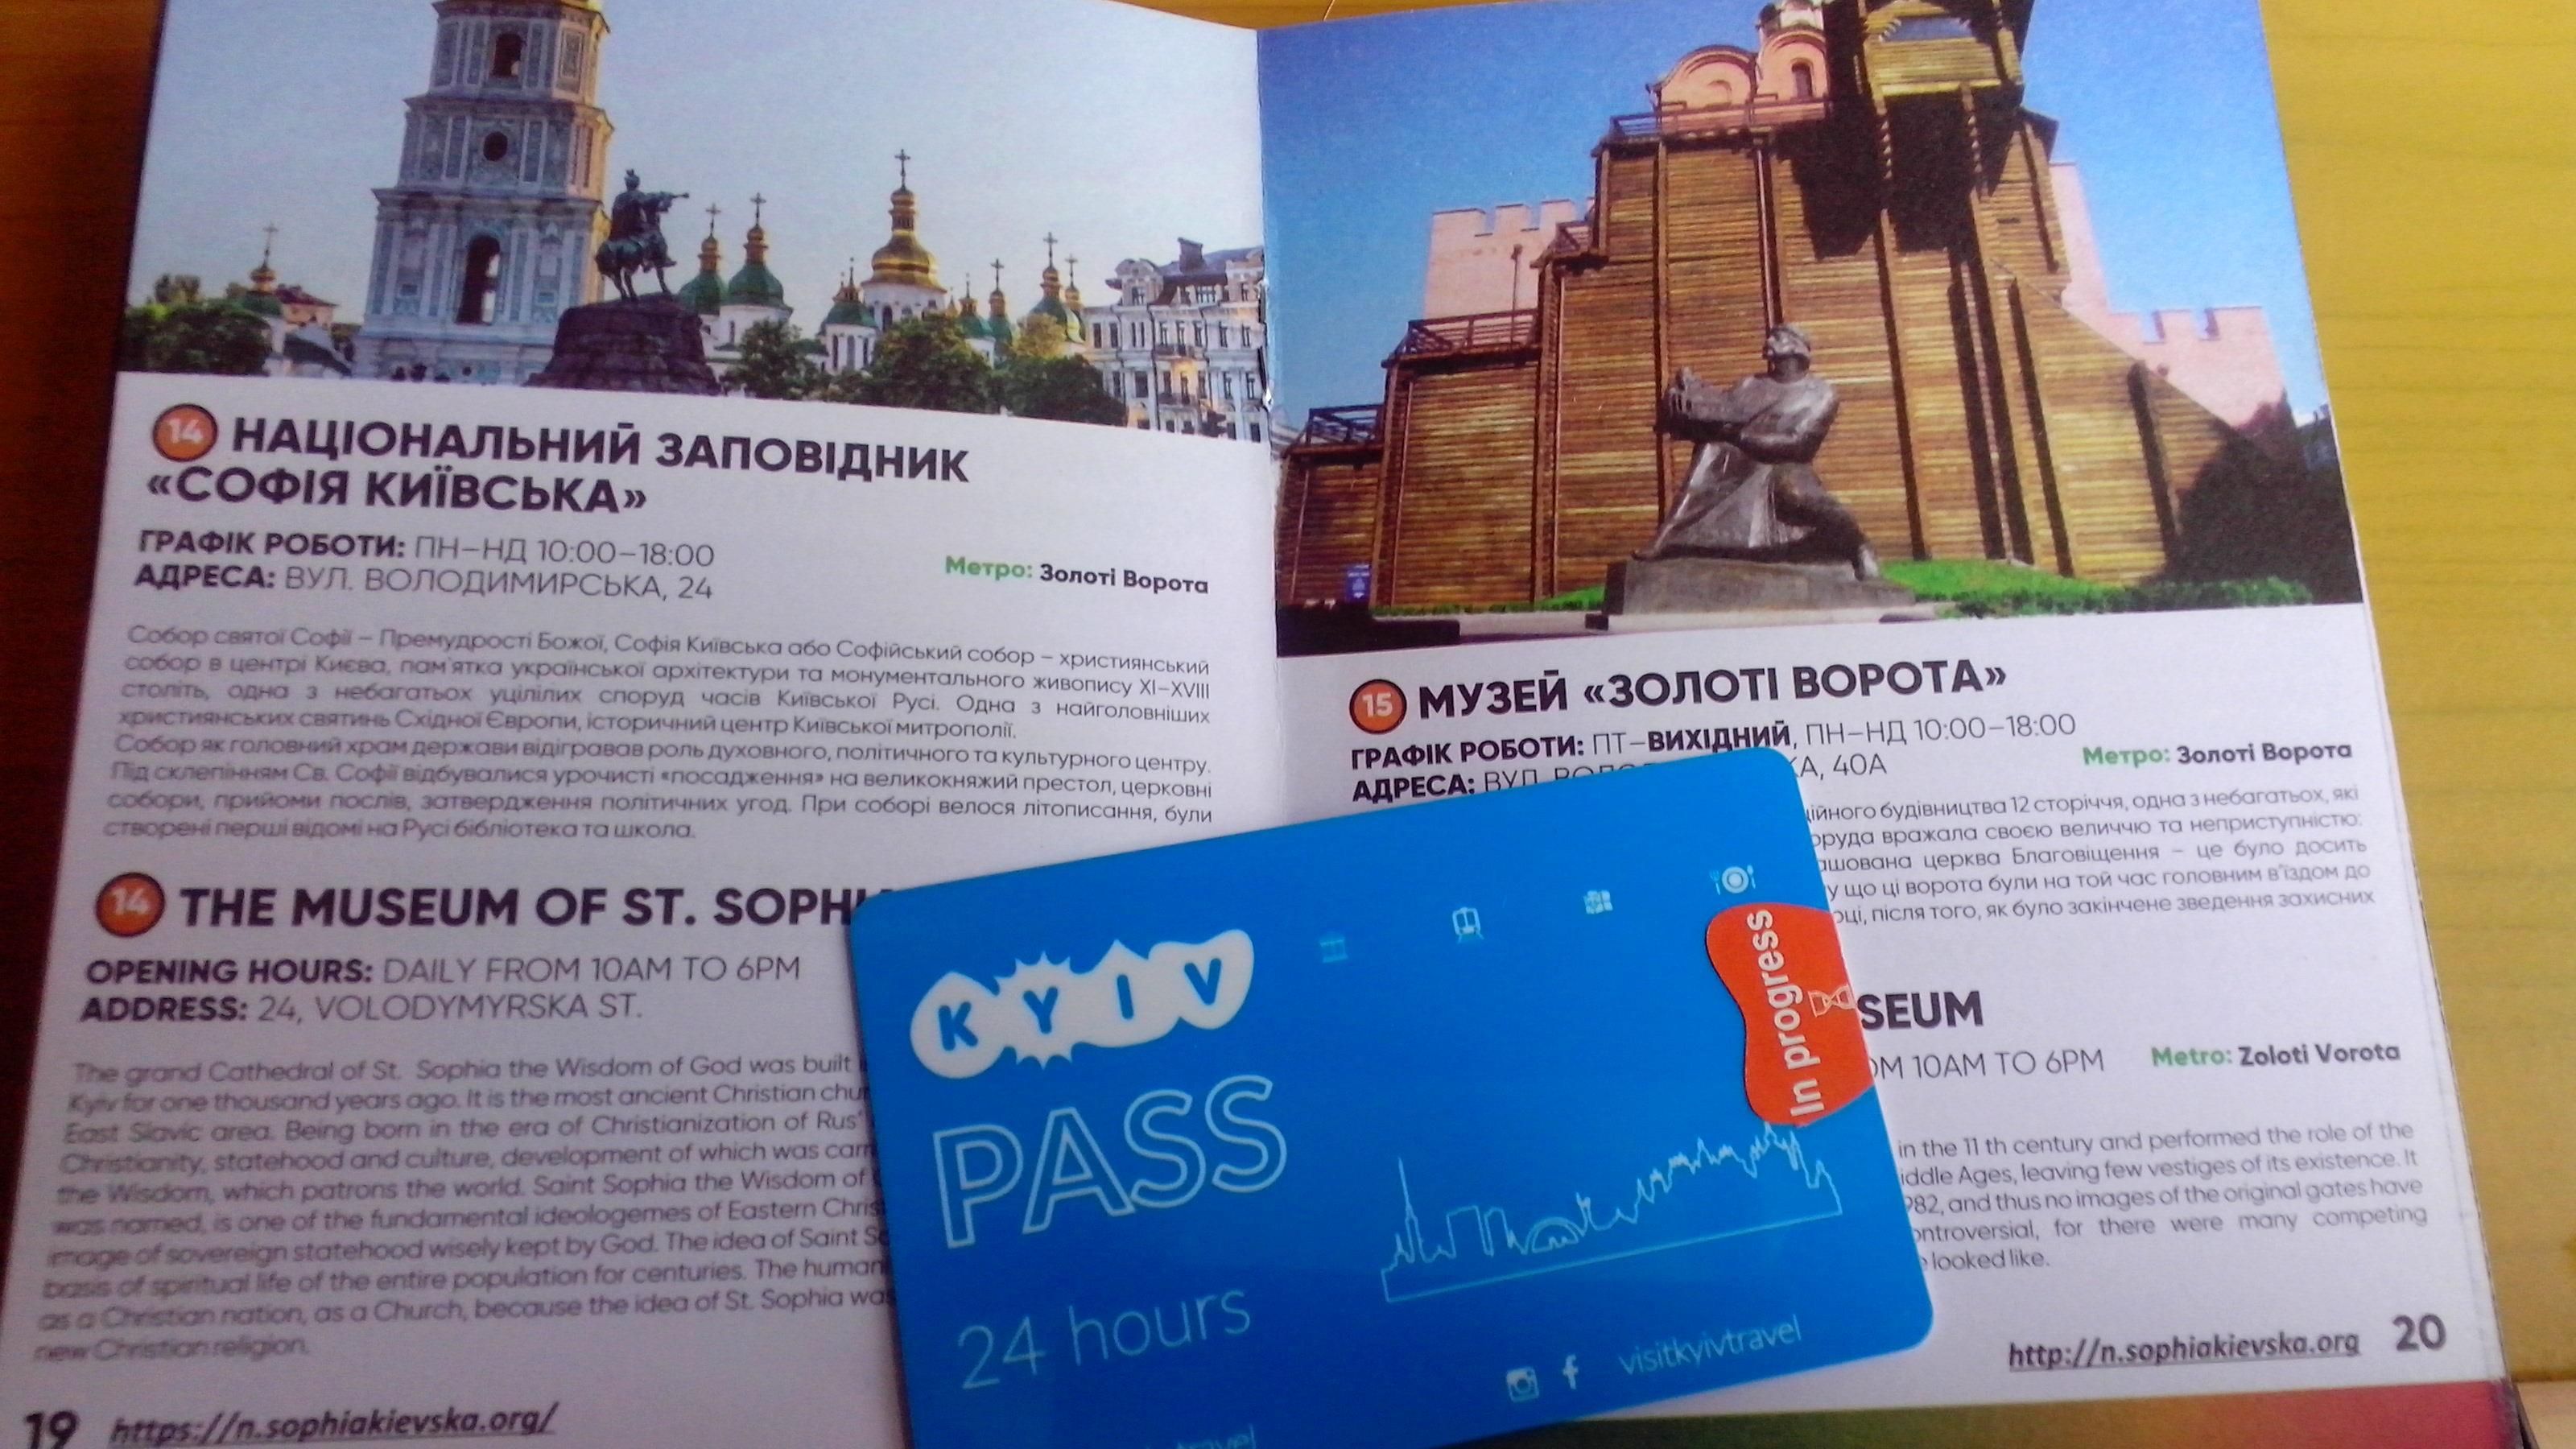 Kyiv PASS - що це, коли і як працюватиме ID-картка туриста у Києві